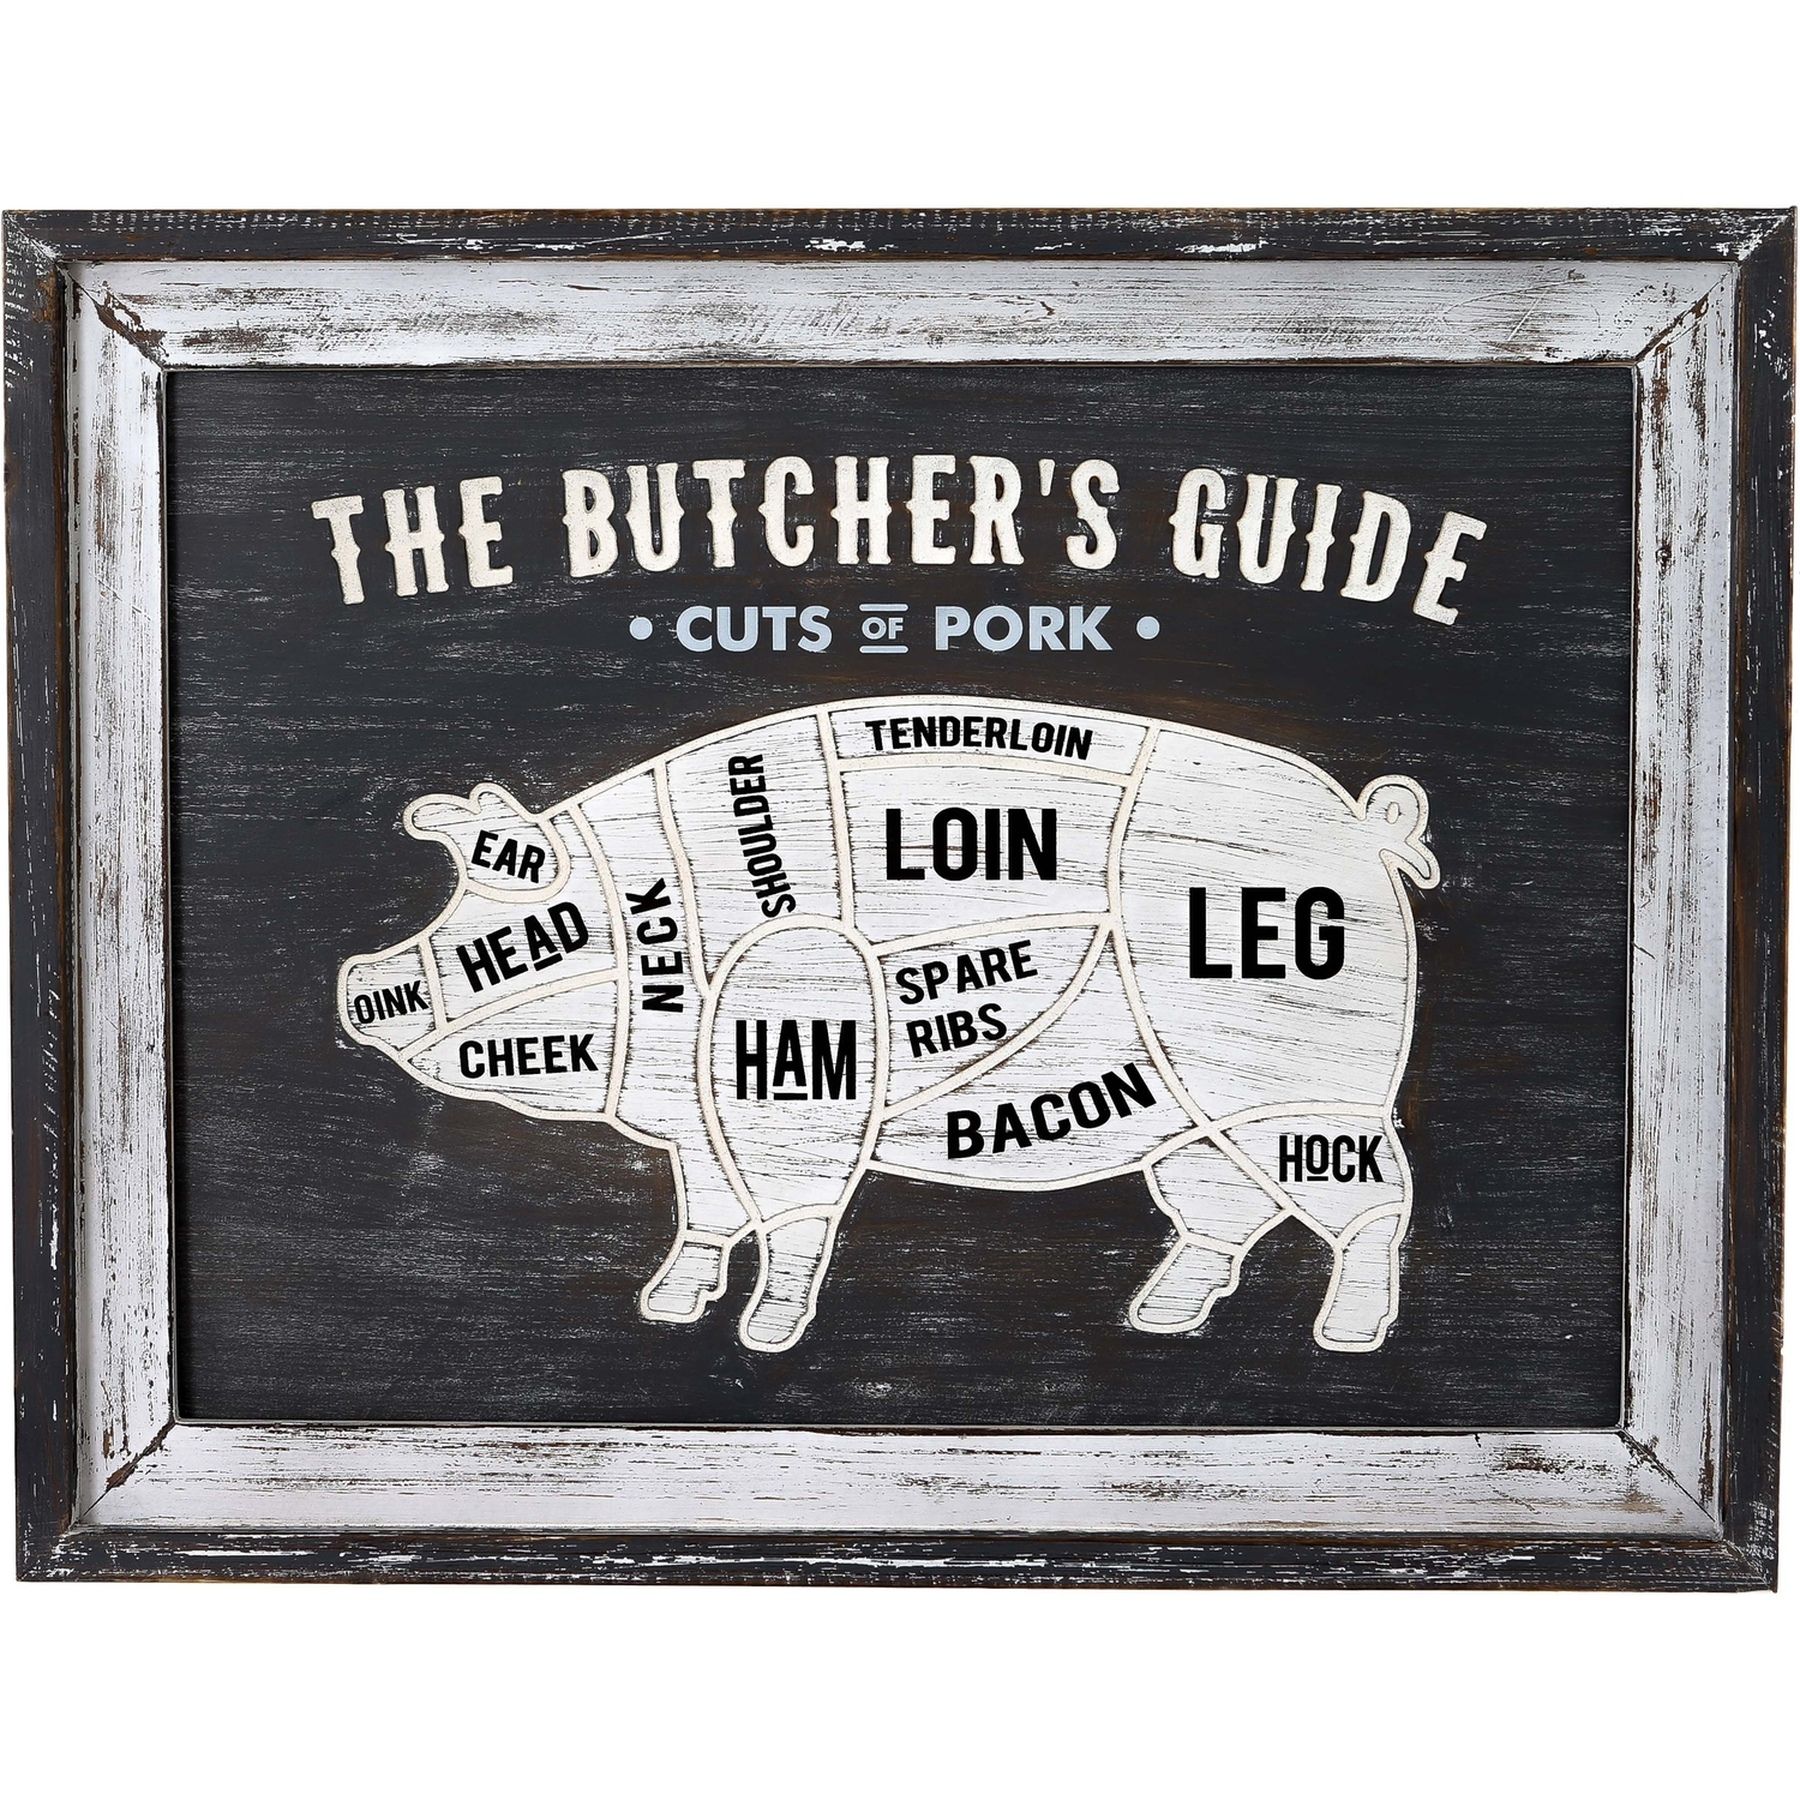 Butchers Cuts Pork Wall Plaque - Image 1